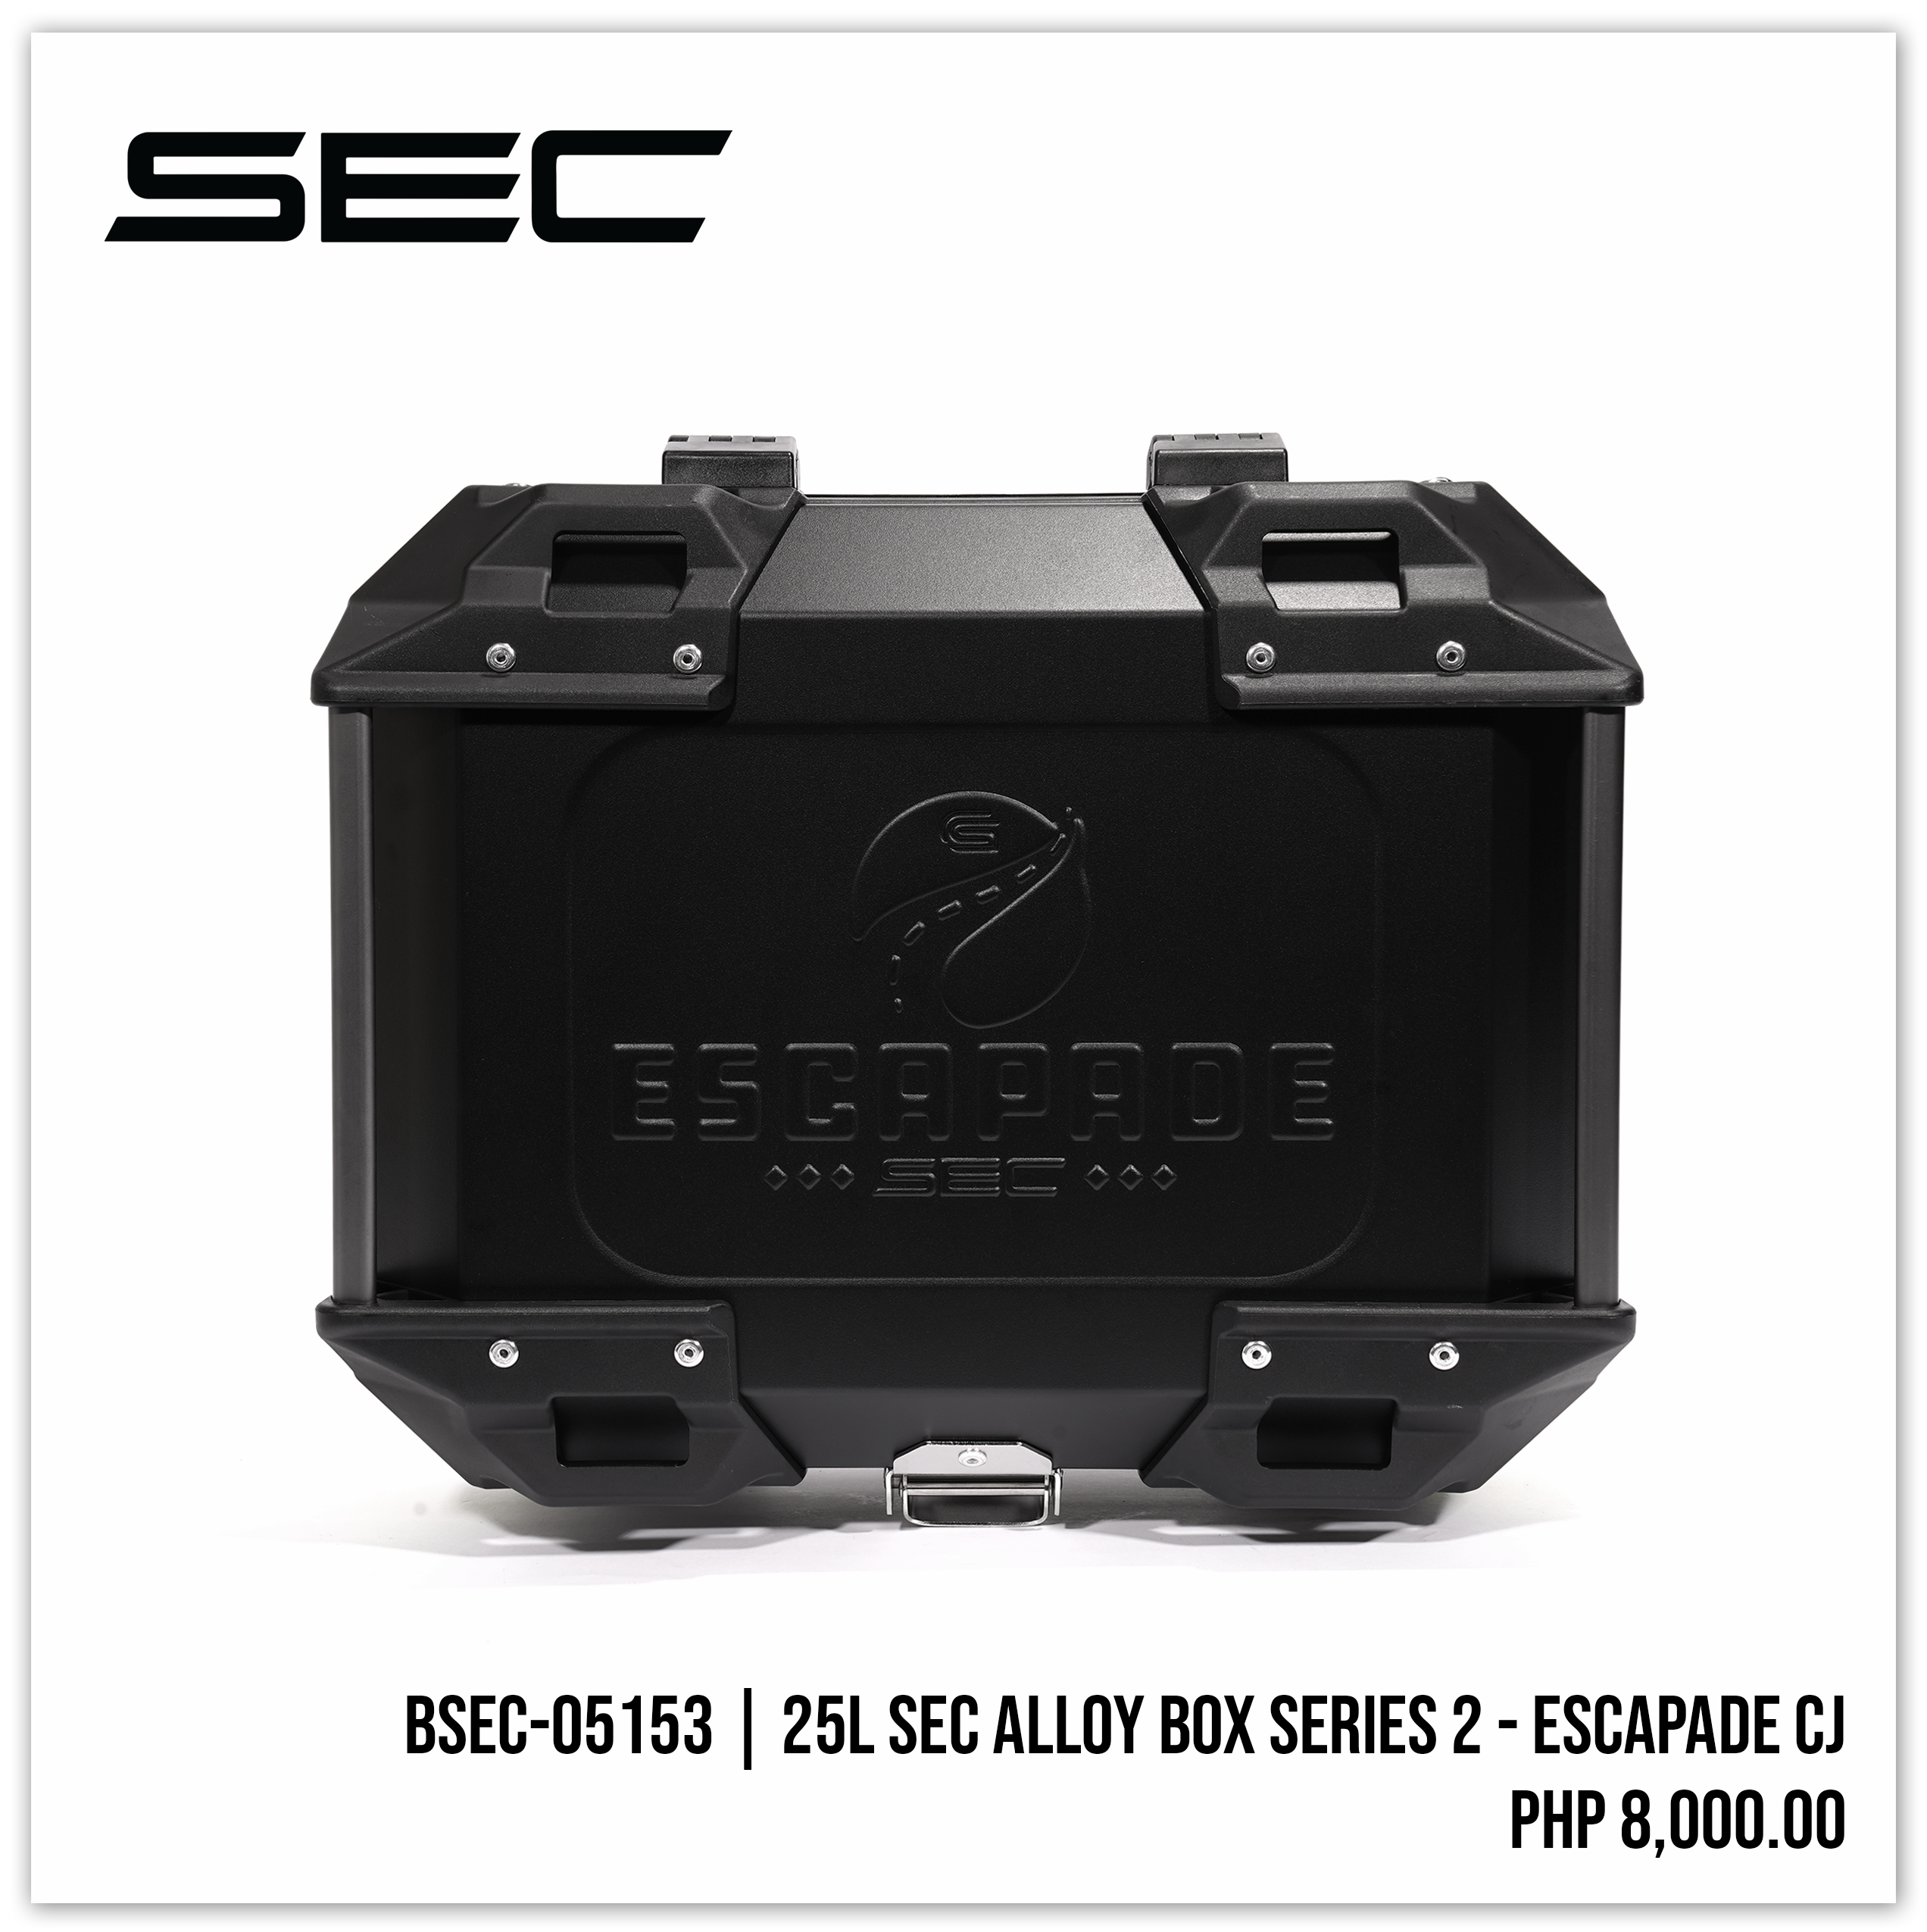 25L SEC Alloy Box Series 2 - ESCAPADE CJ